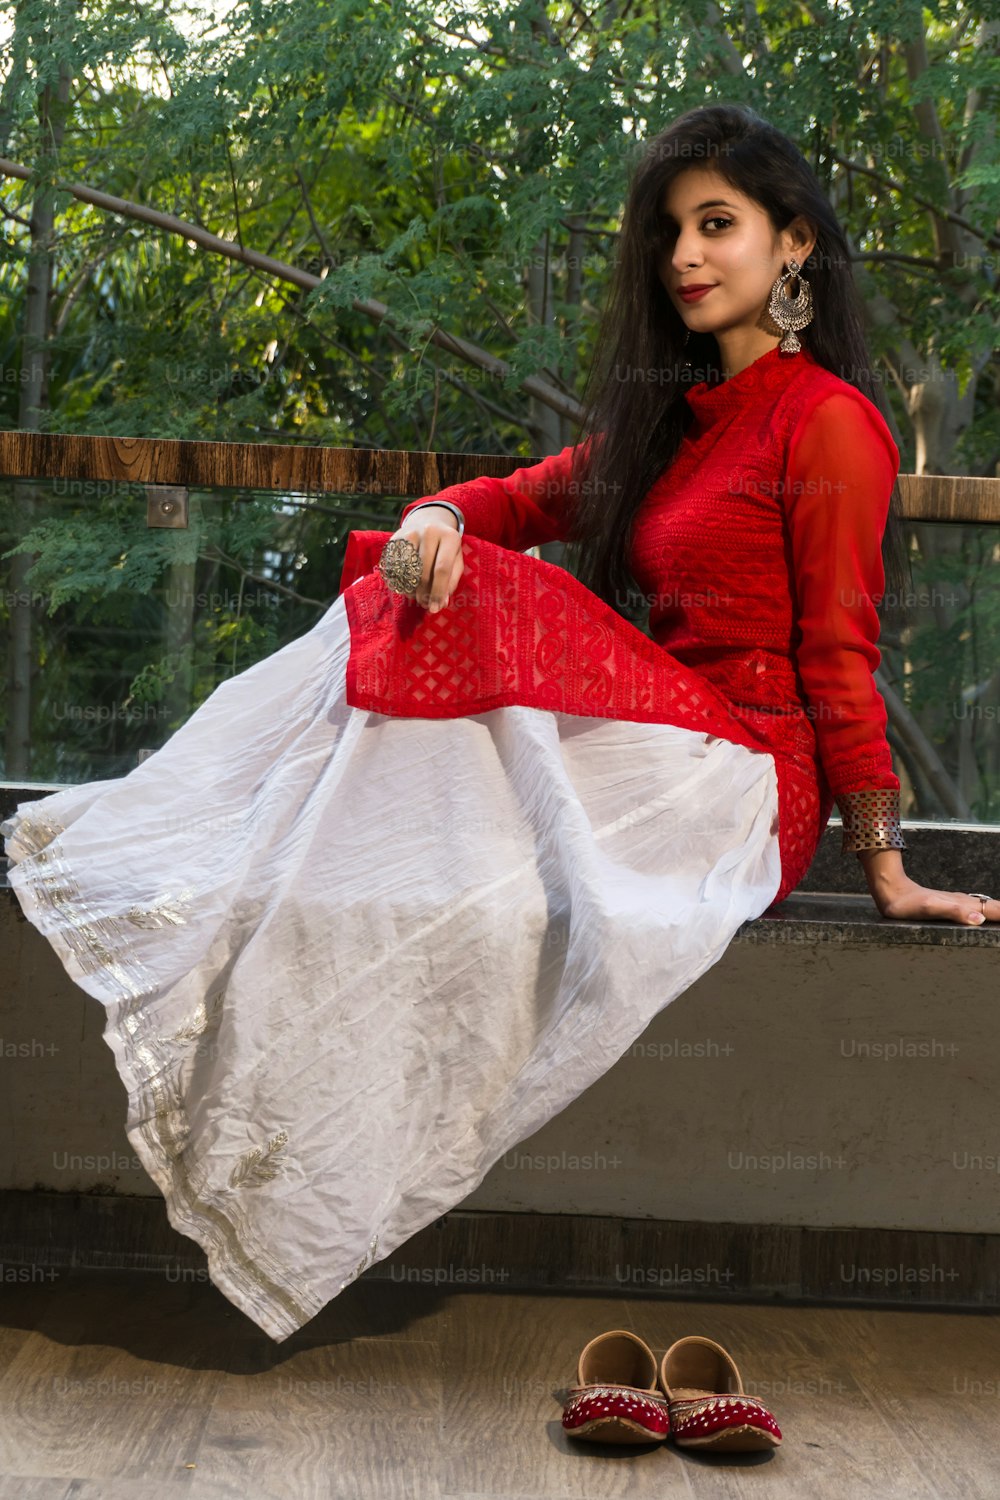 Hermosa chica india. Modelo de joven mujer hindú. Traje rojo tradicional indio